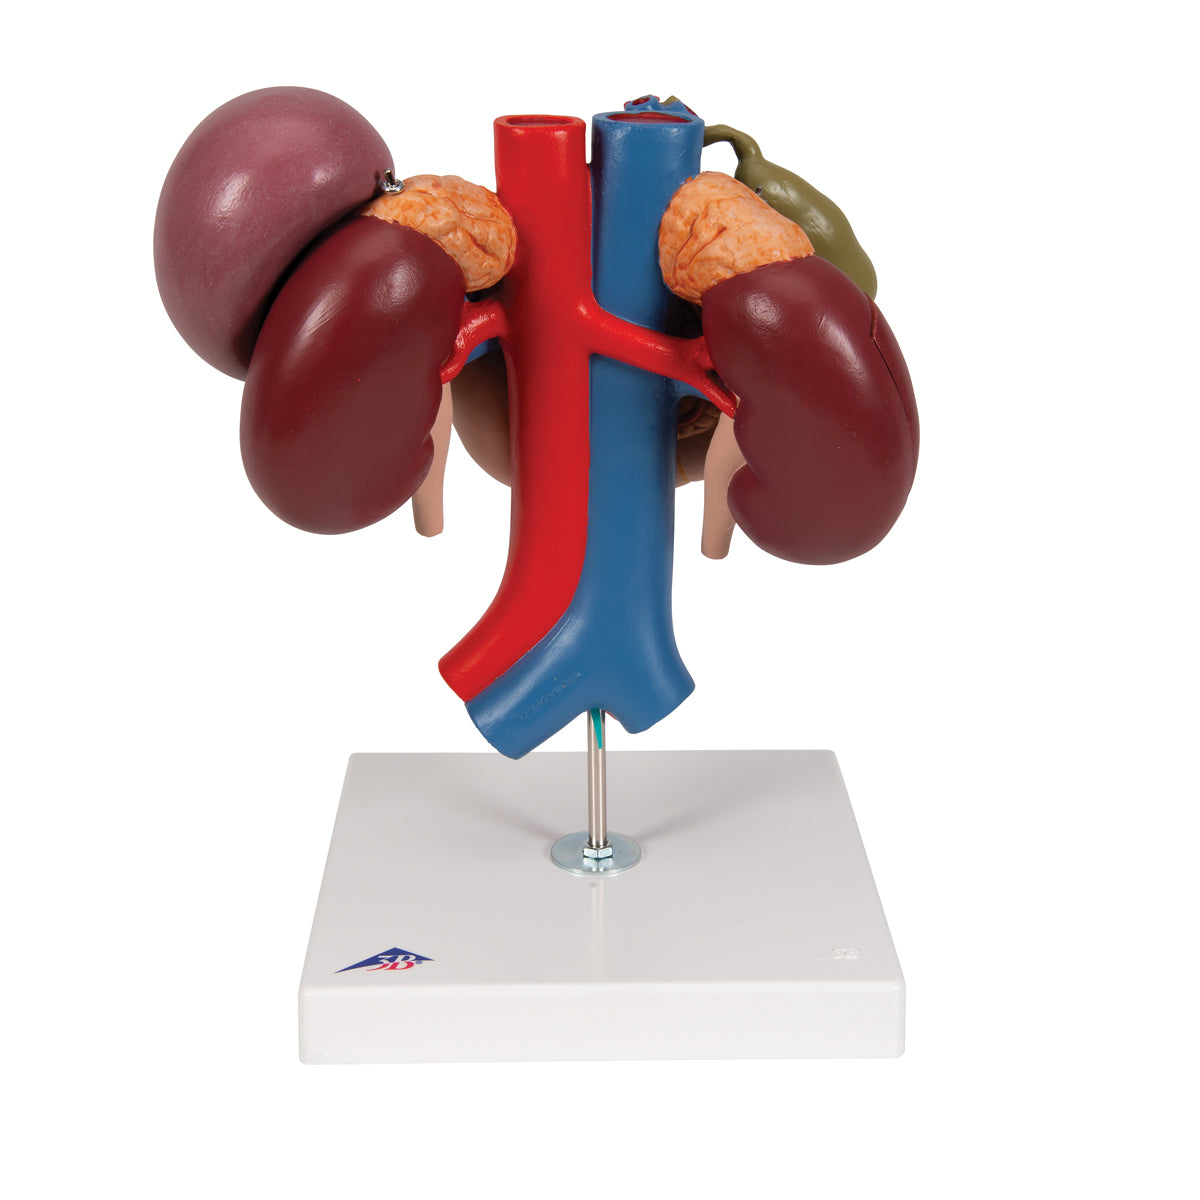 Detaljeret model af tolvfingertarmen og bugspytkirtlens relationer til andre organer - kan adskilles i 3 dele